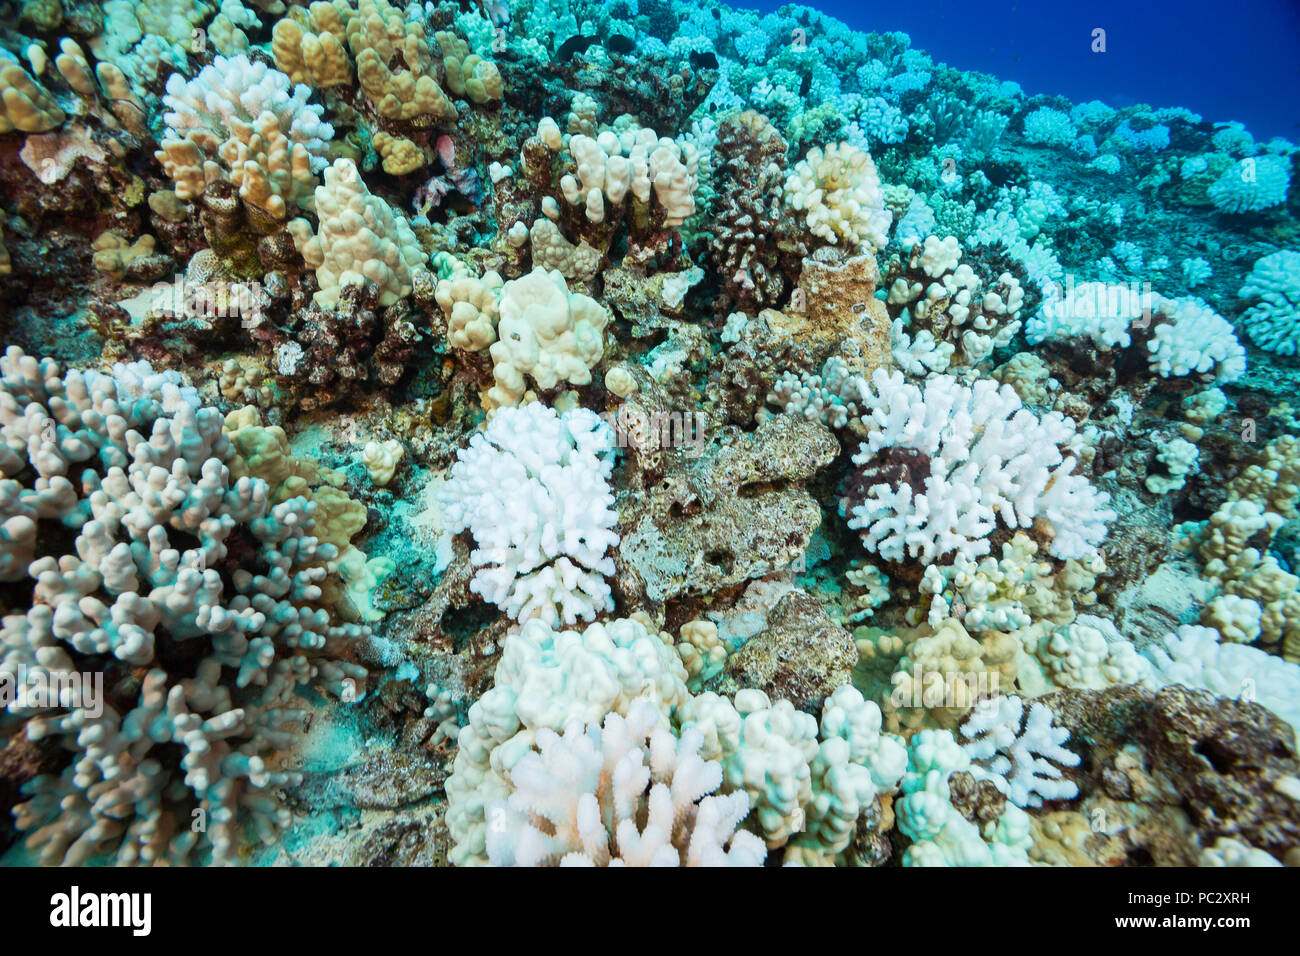 Esta imagen, rodada en octubre de 2015, muestra el blanqueamiento del coral en un arrecife hawaiano. Las colonias de coral Pocillopora meandrina coliflor, parece ser th Foto de stock